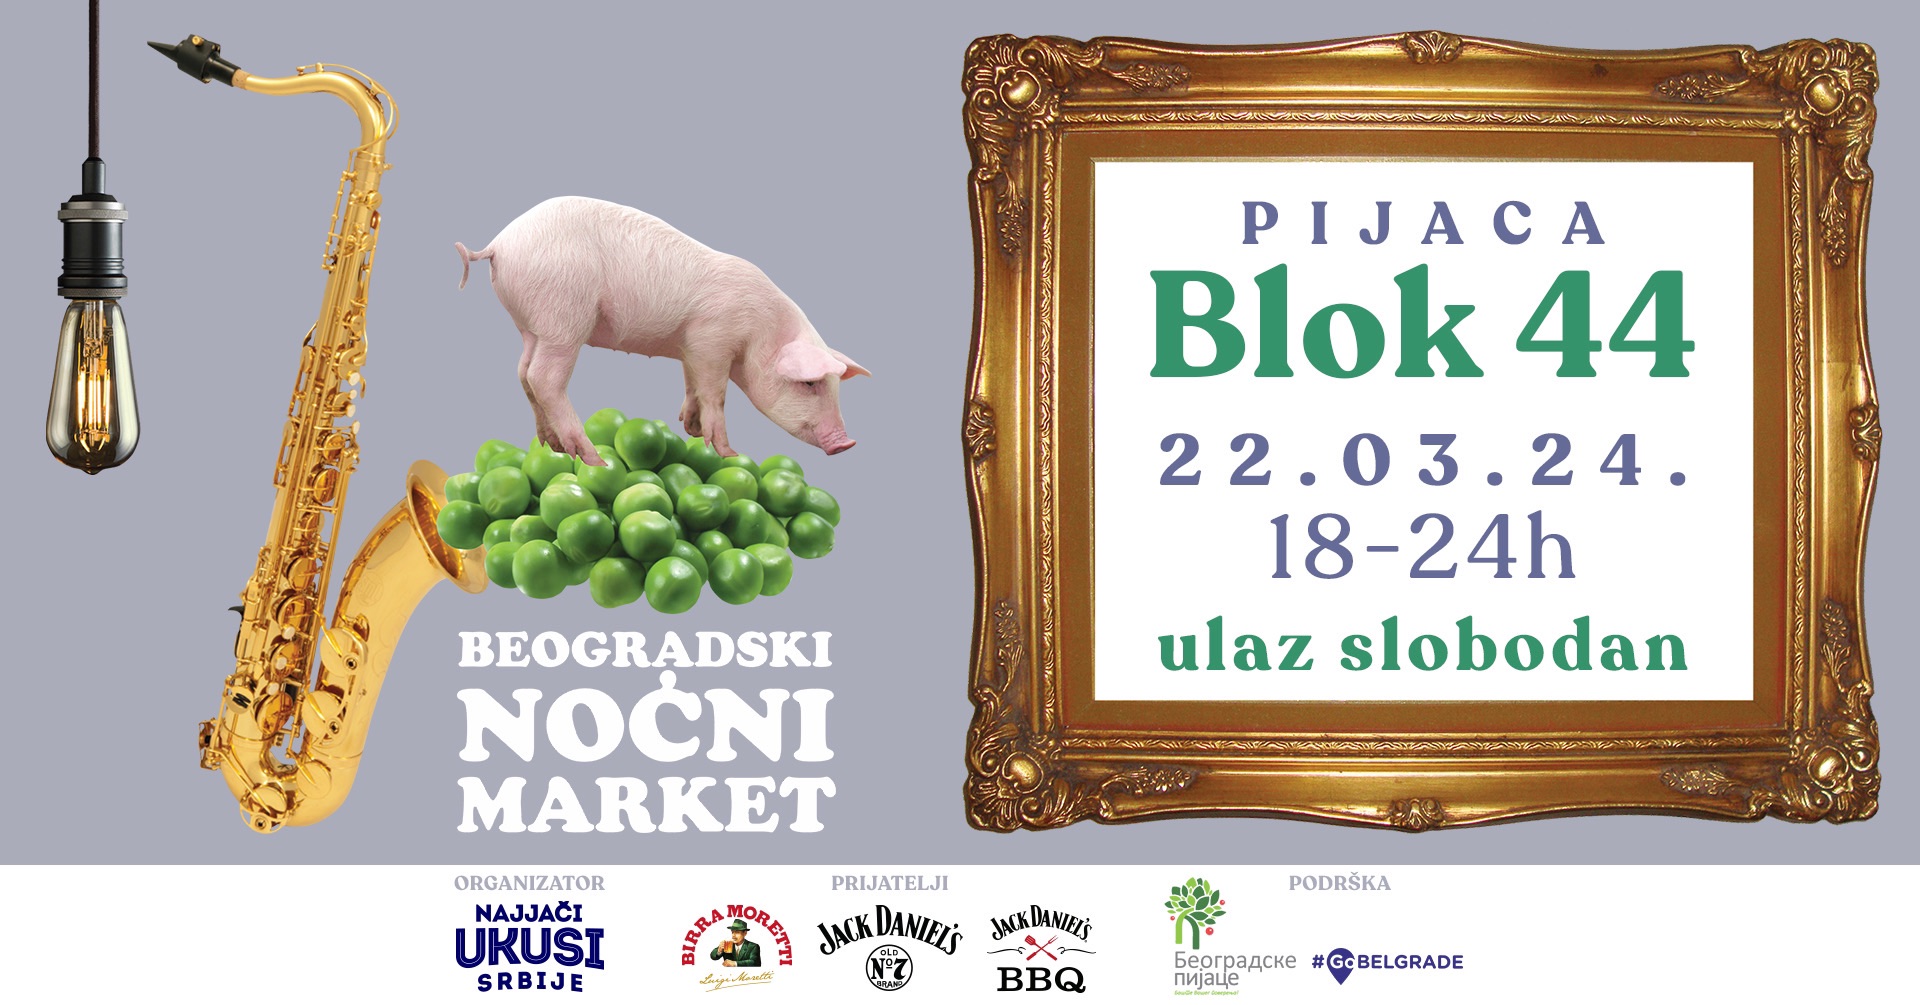 Beogradskih Noćnih Market 22.03.2024. Pijaca Blok 44